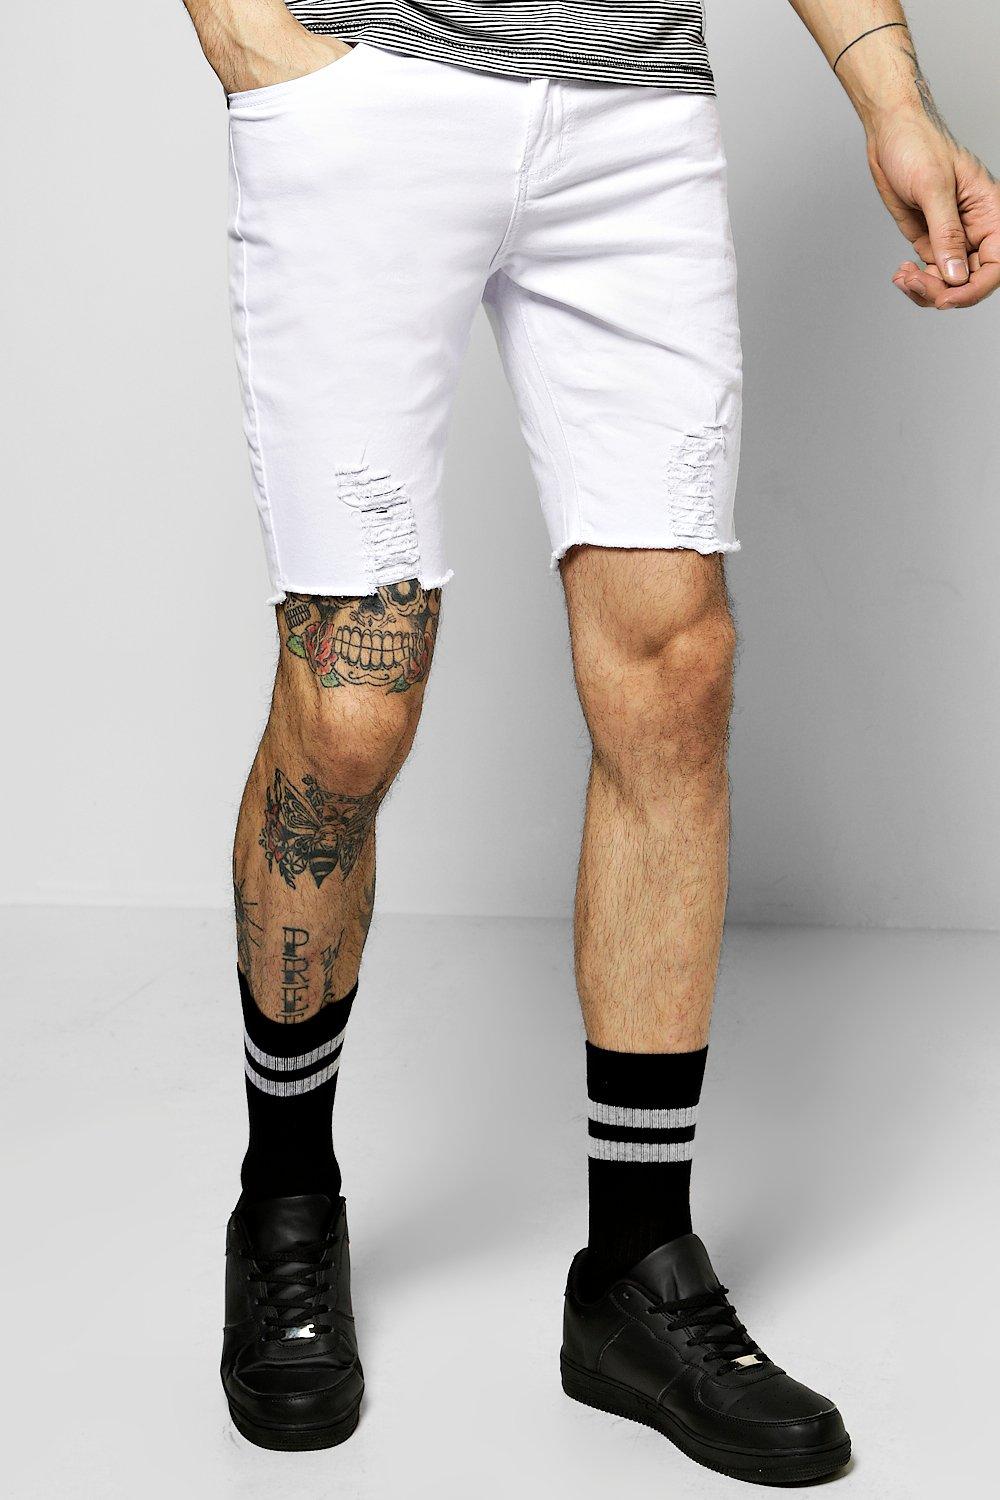 white skinny denim shorts